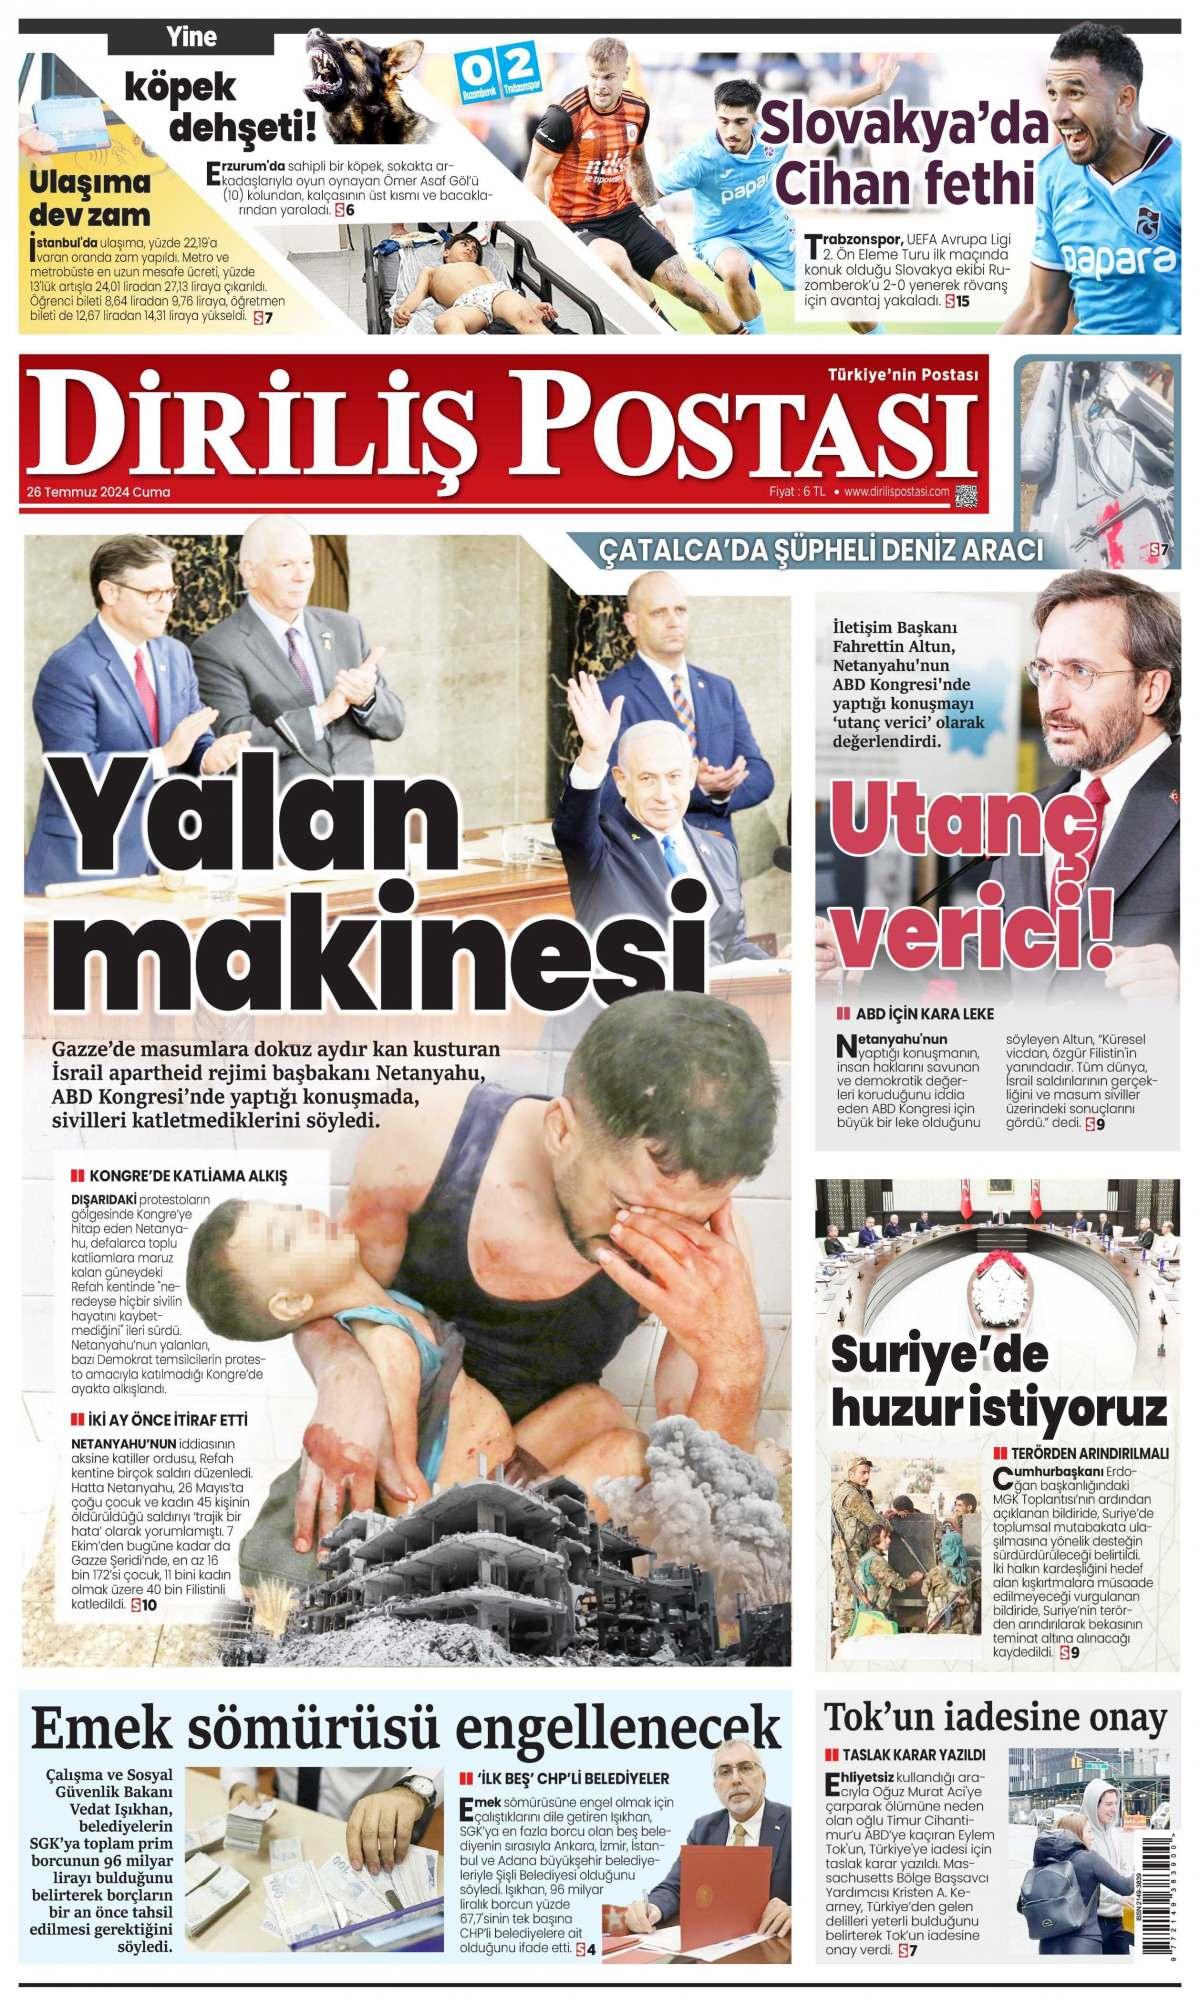 Diriliş Postası Gazetesi İlk Sayfası